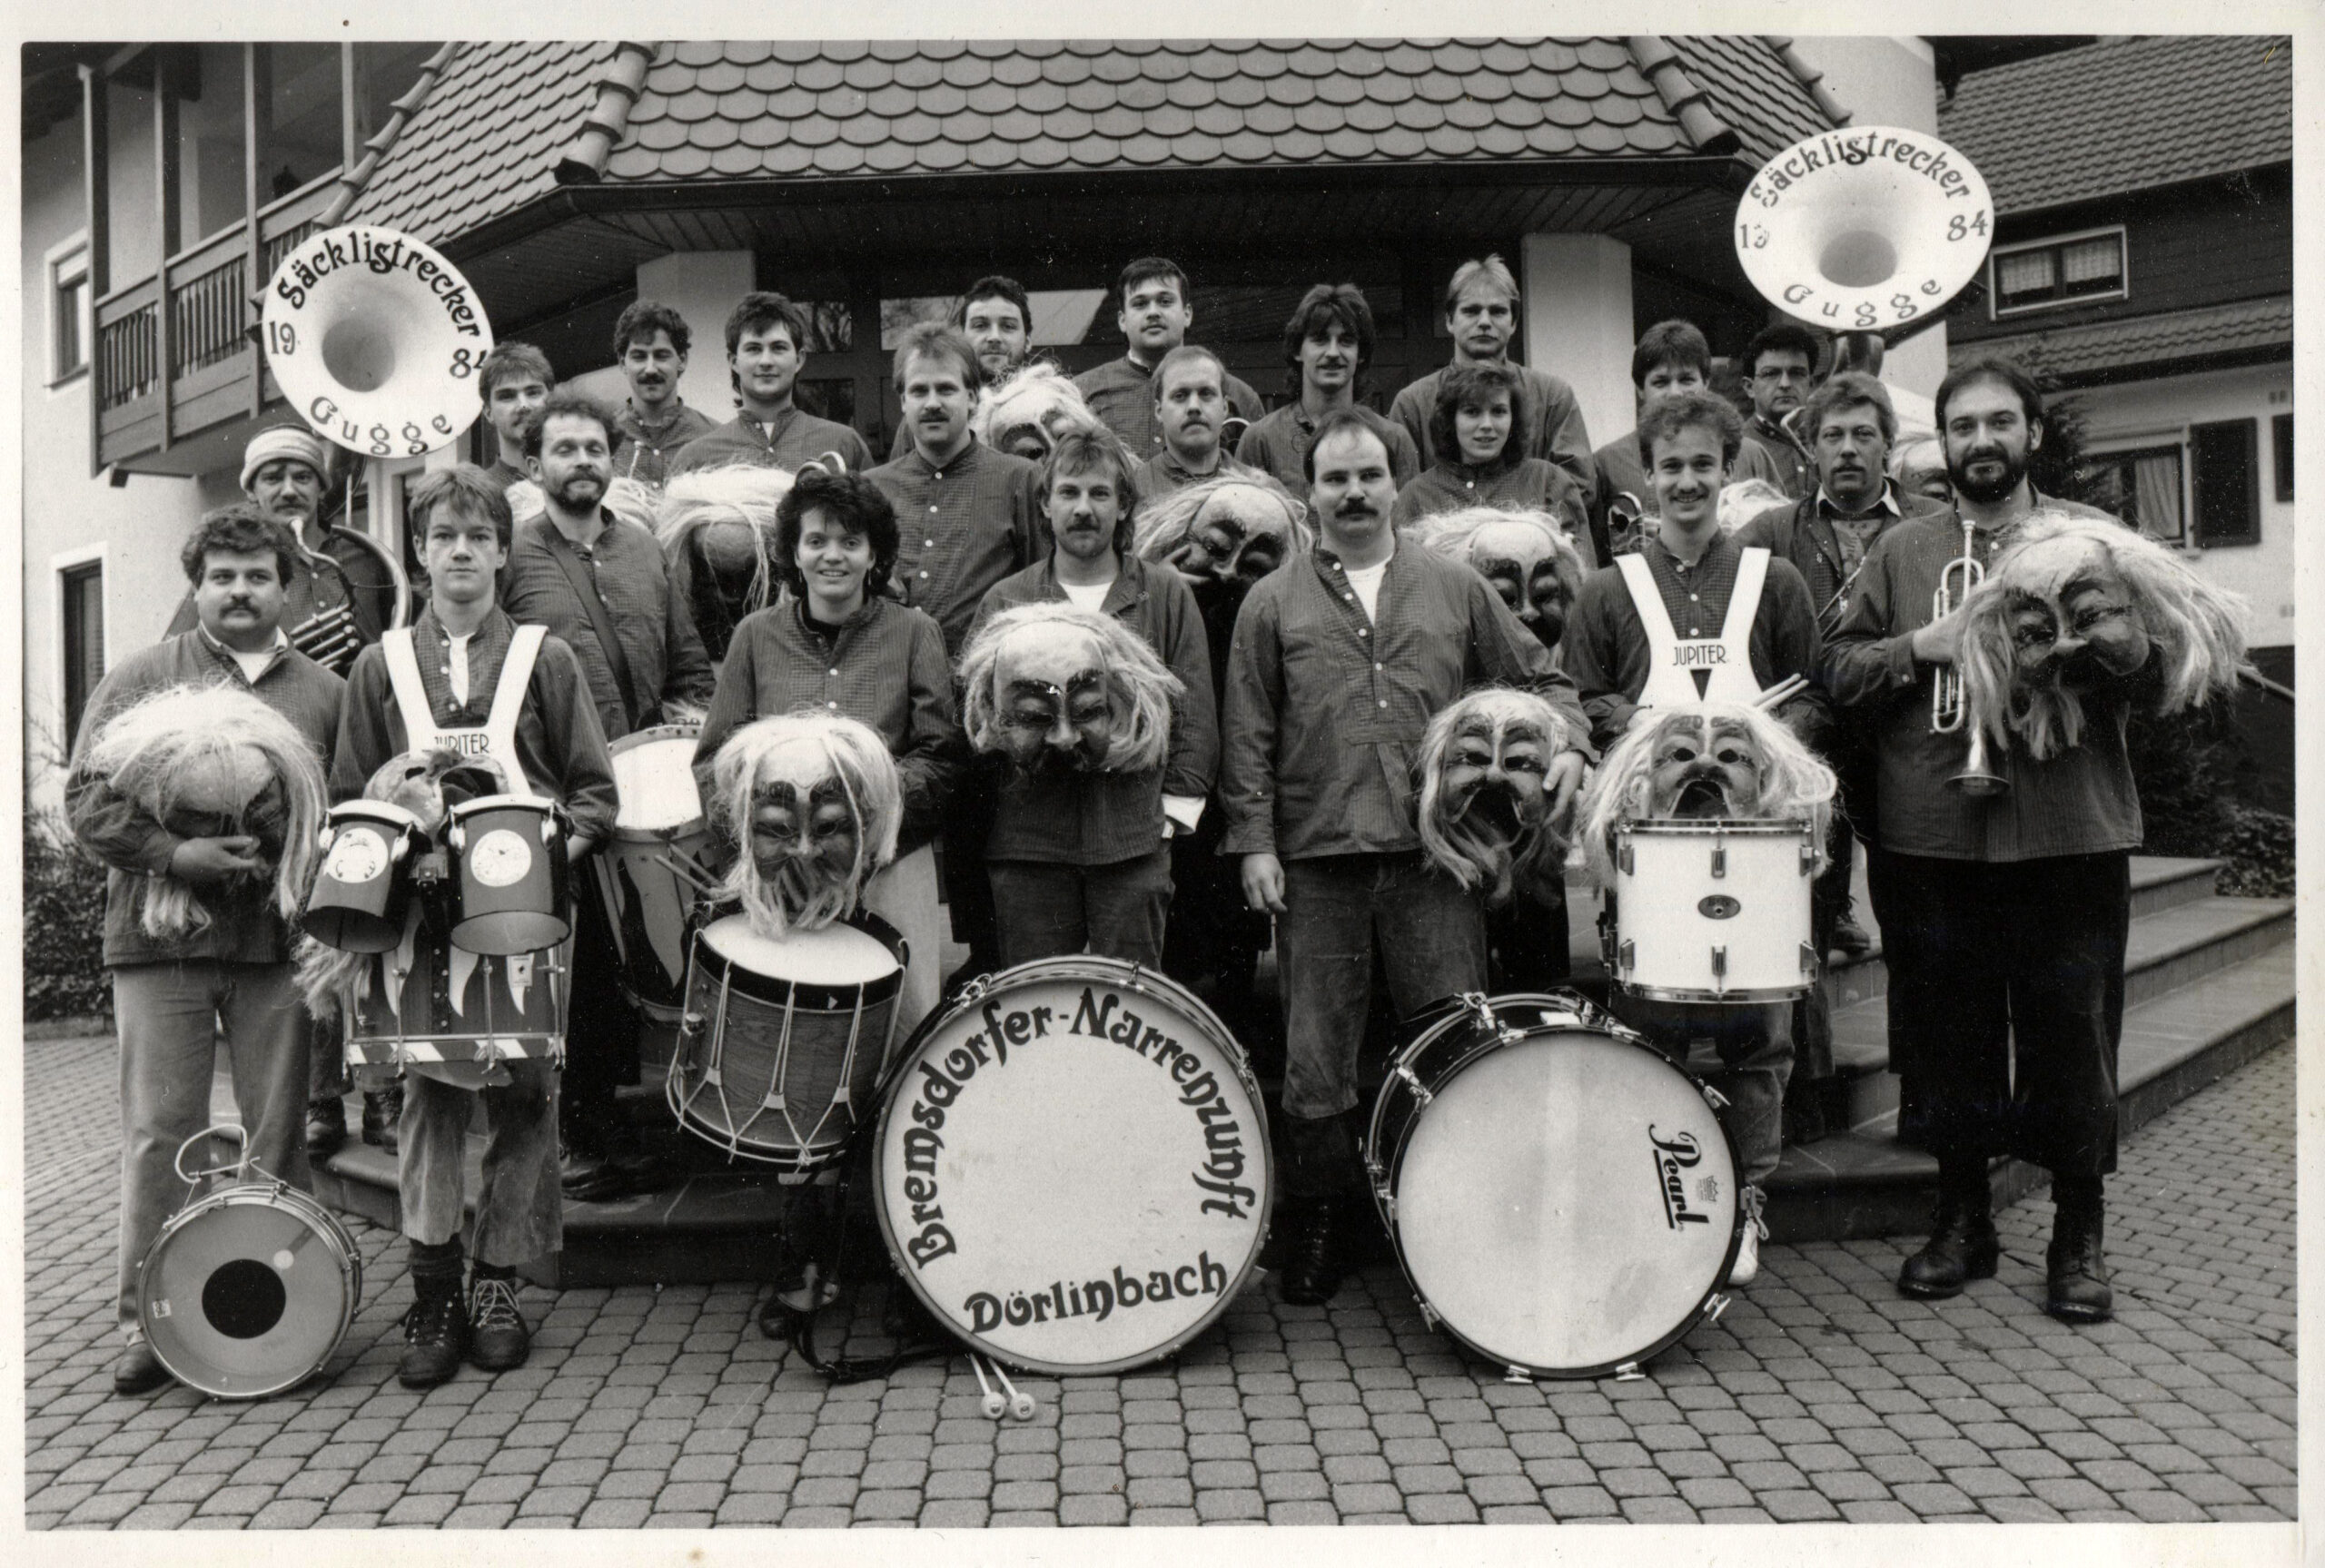 Die Säcklistrecker posieren vor der ehemaligen Sparkassen-Filiale anlässlich des ersten Narrentreffens im Januar 1989 im heimischen Dörlinbach.